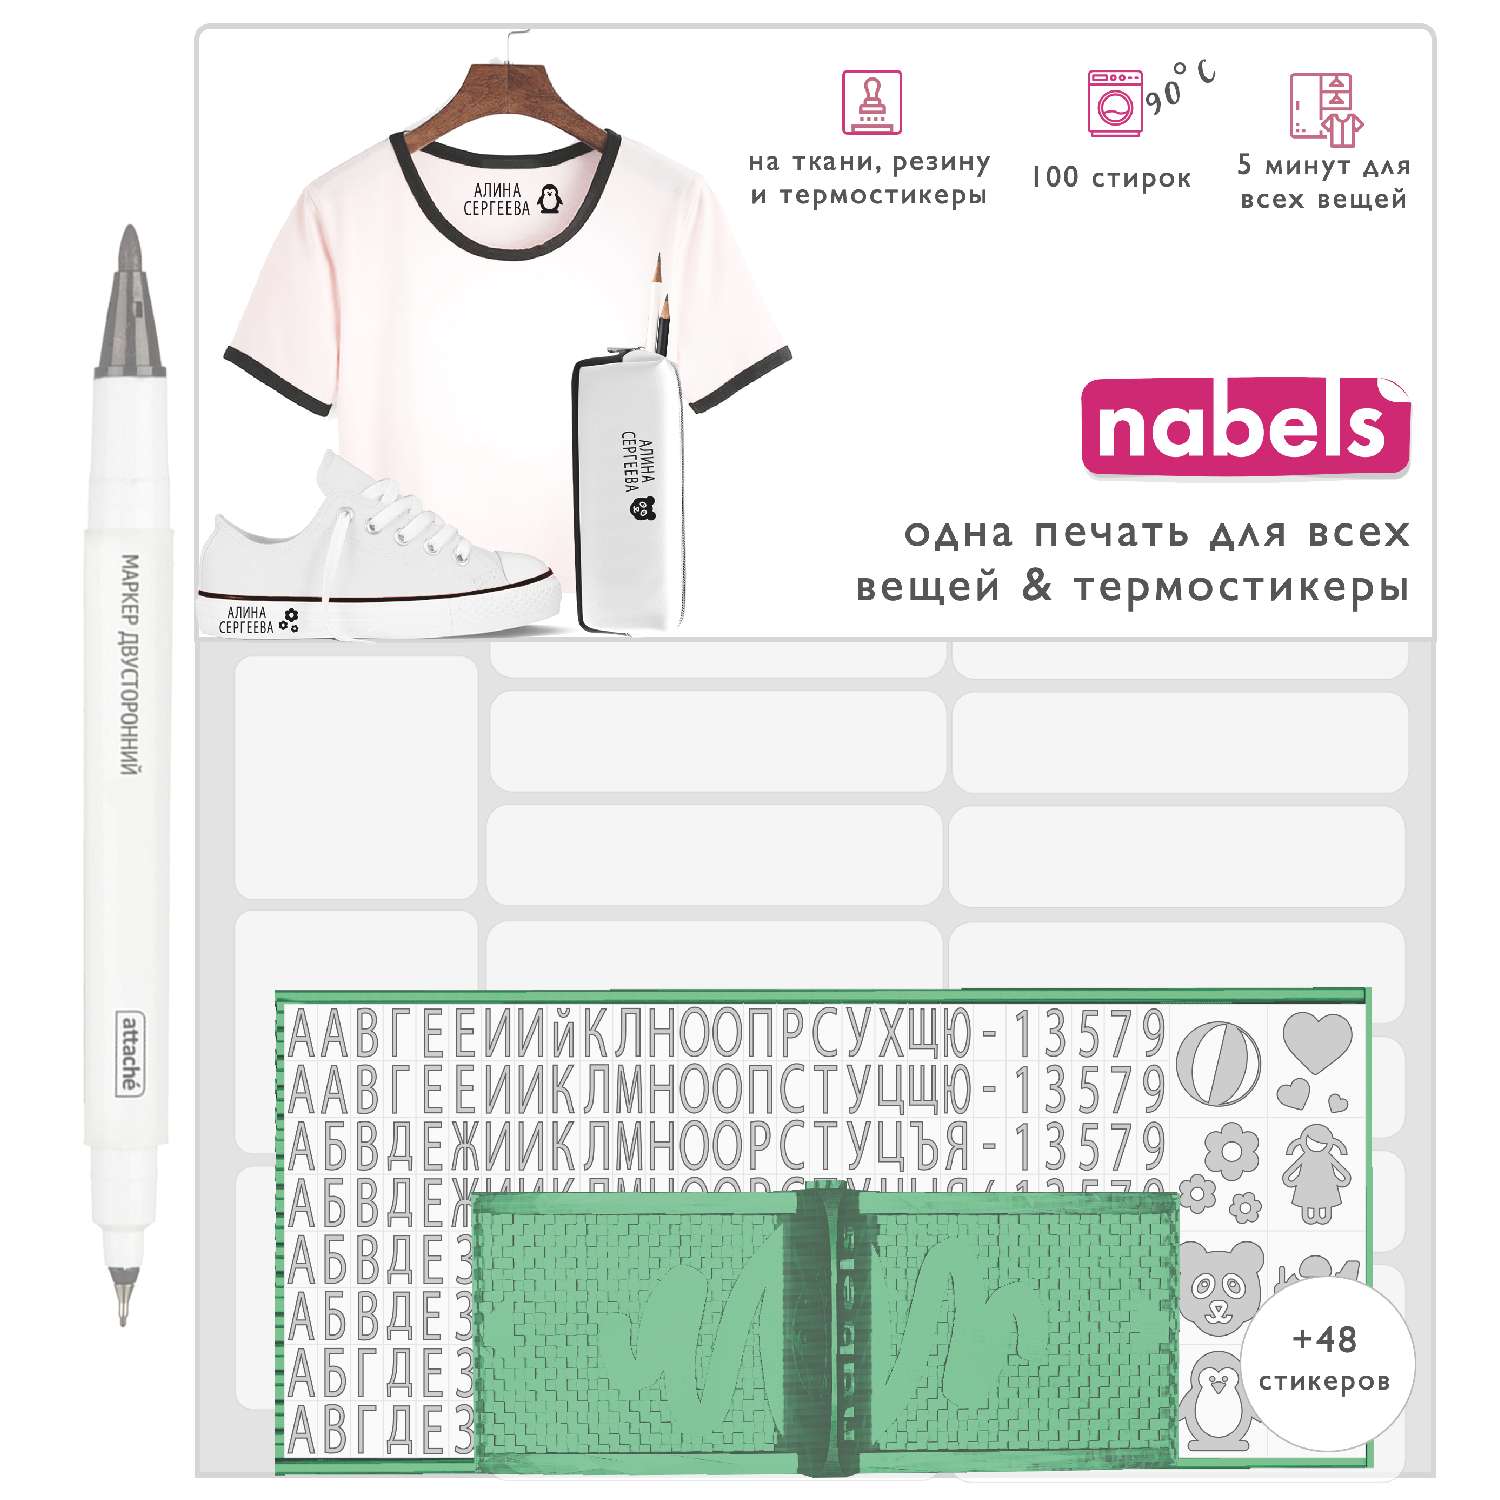 Набор Nabels для самонаборной печати с термостикерами Белый - фото 1